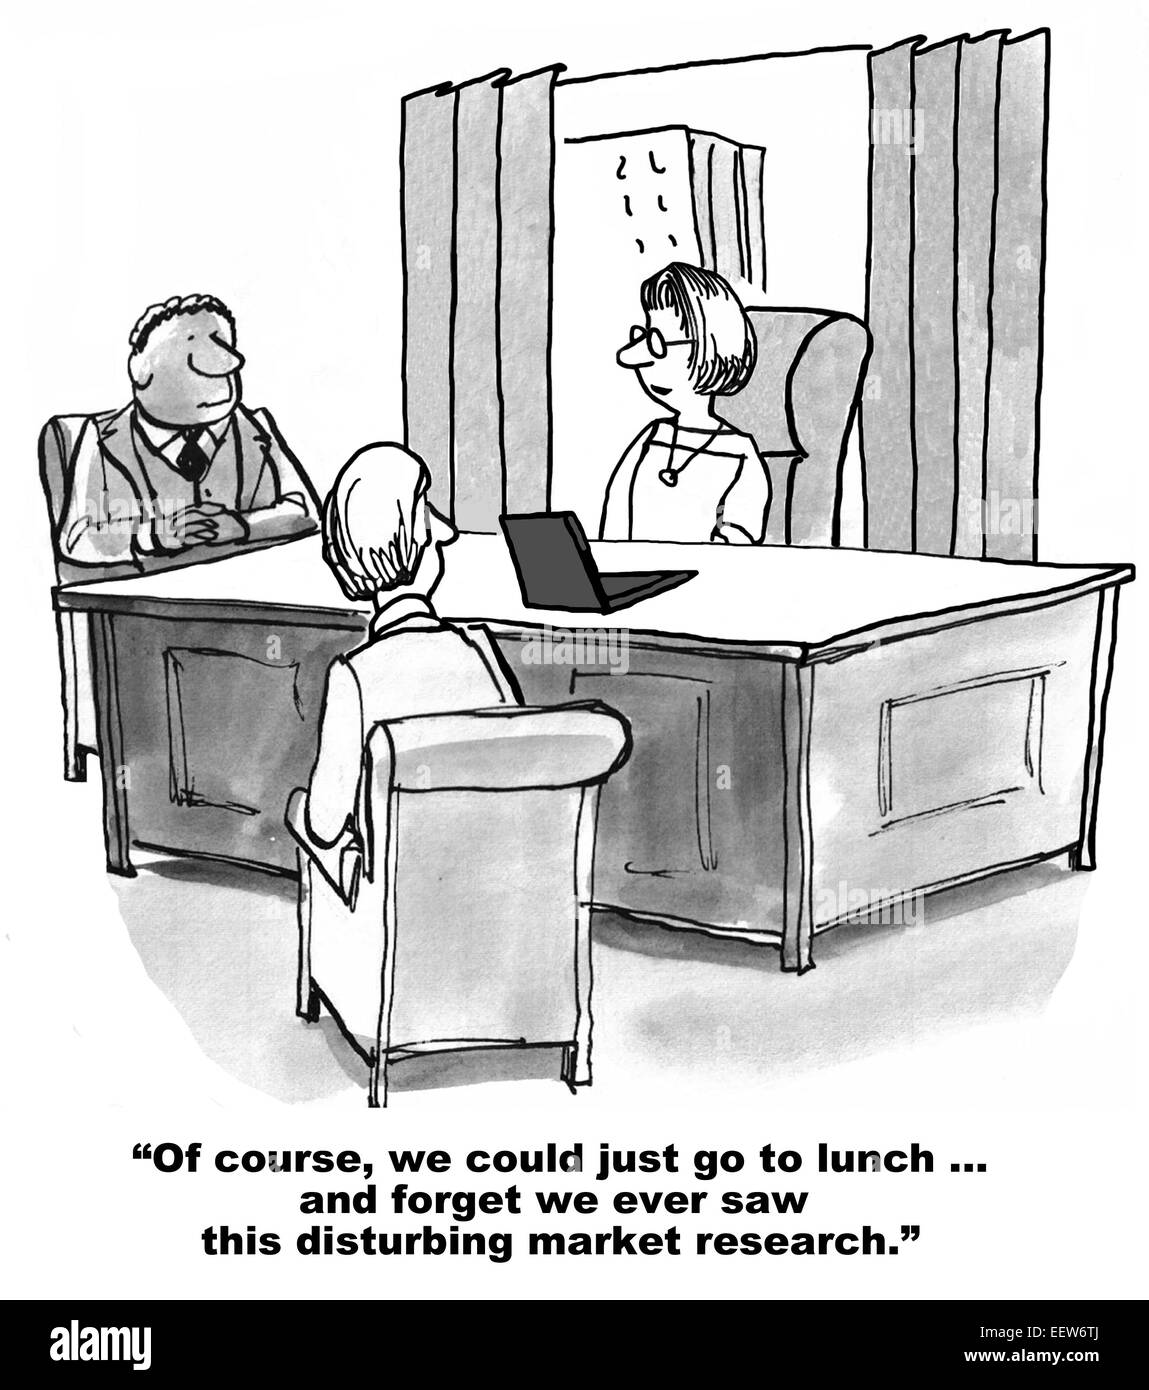 Karikatur von drei Geschäftsleute in einem Büro und einem sagt, dass wir nur vergessen konnten, sahen wir immer diese störenden Marktforschung. Stockfoto